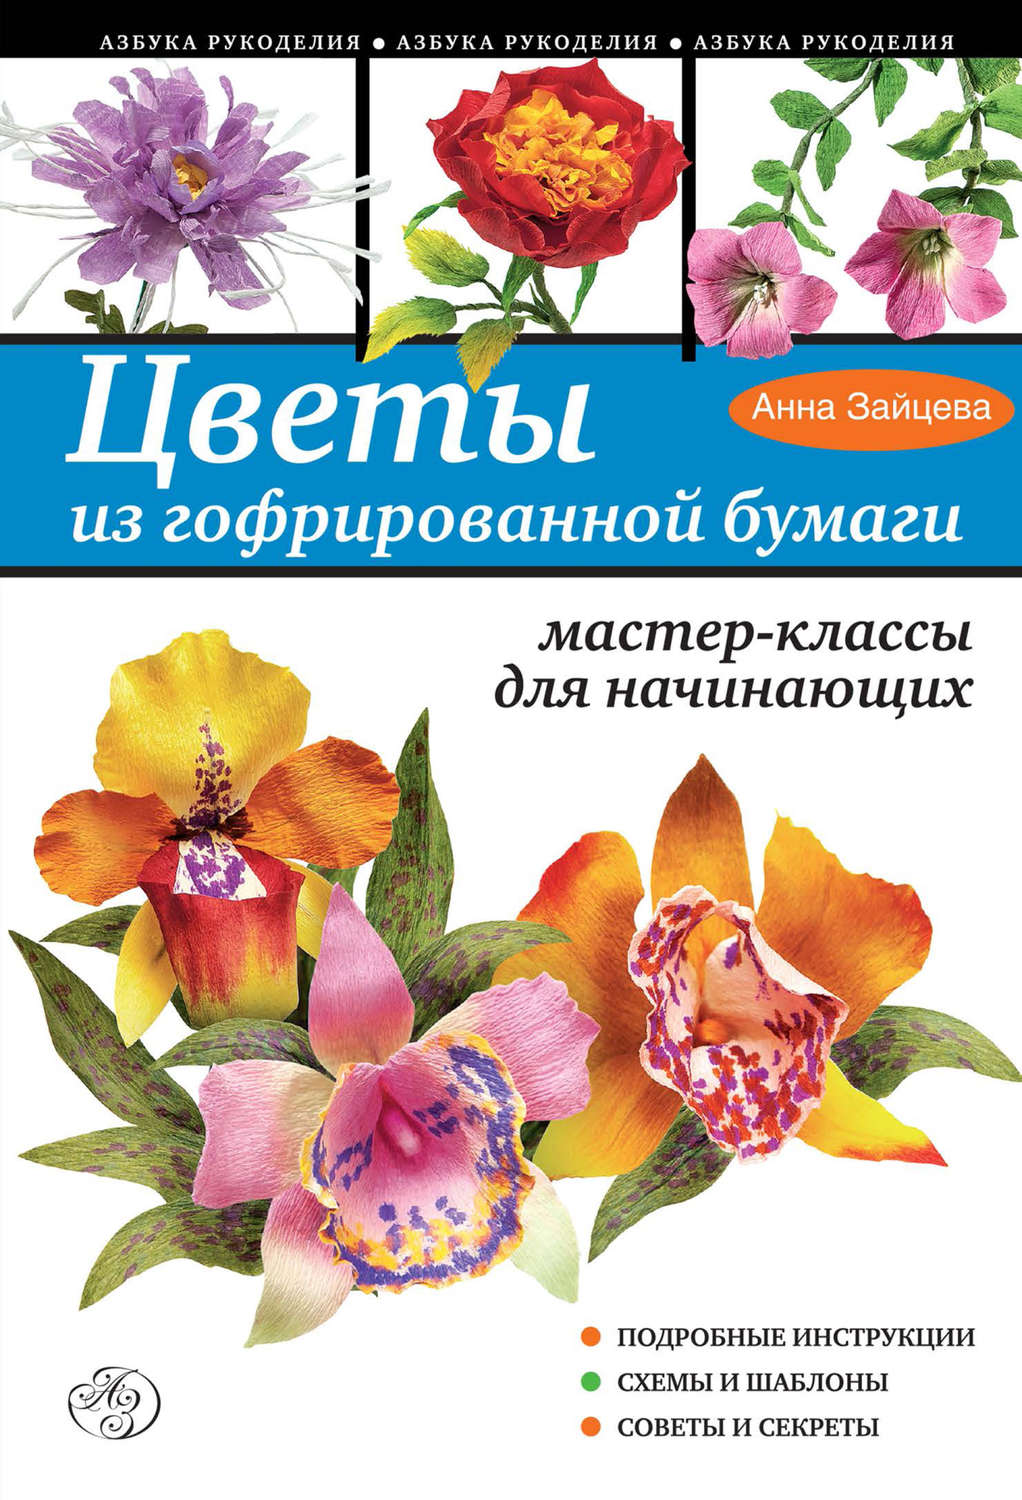 Шикарные цветы из гофрированной бумаги: 40 фото-идей + пошаговый мастер-класс